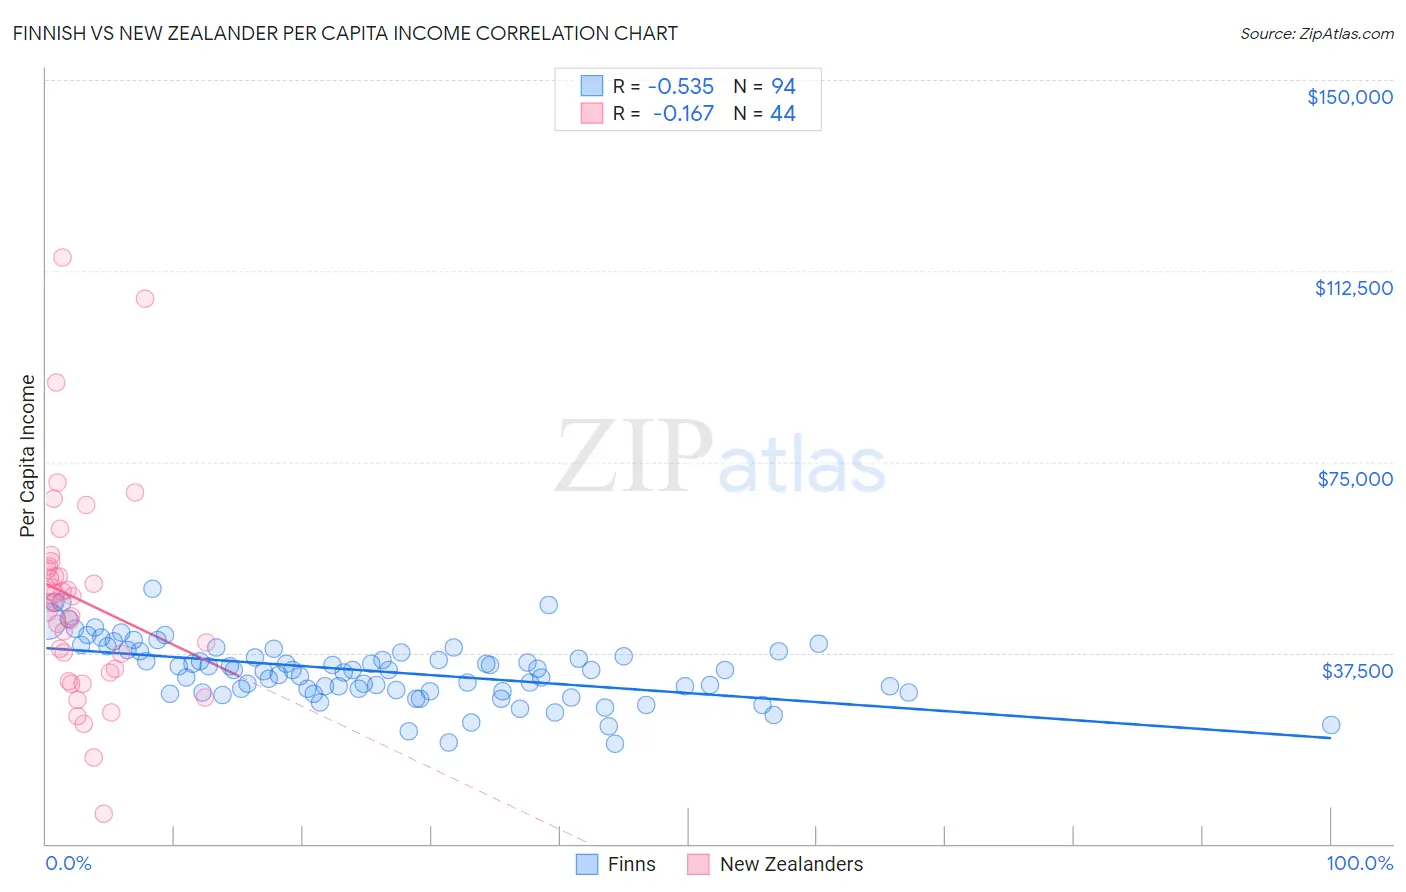 Finnish vs New Zealander Per Capita Income